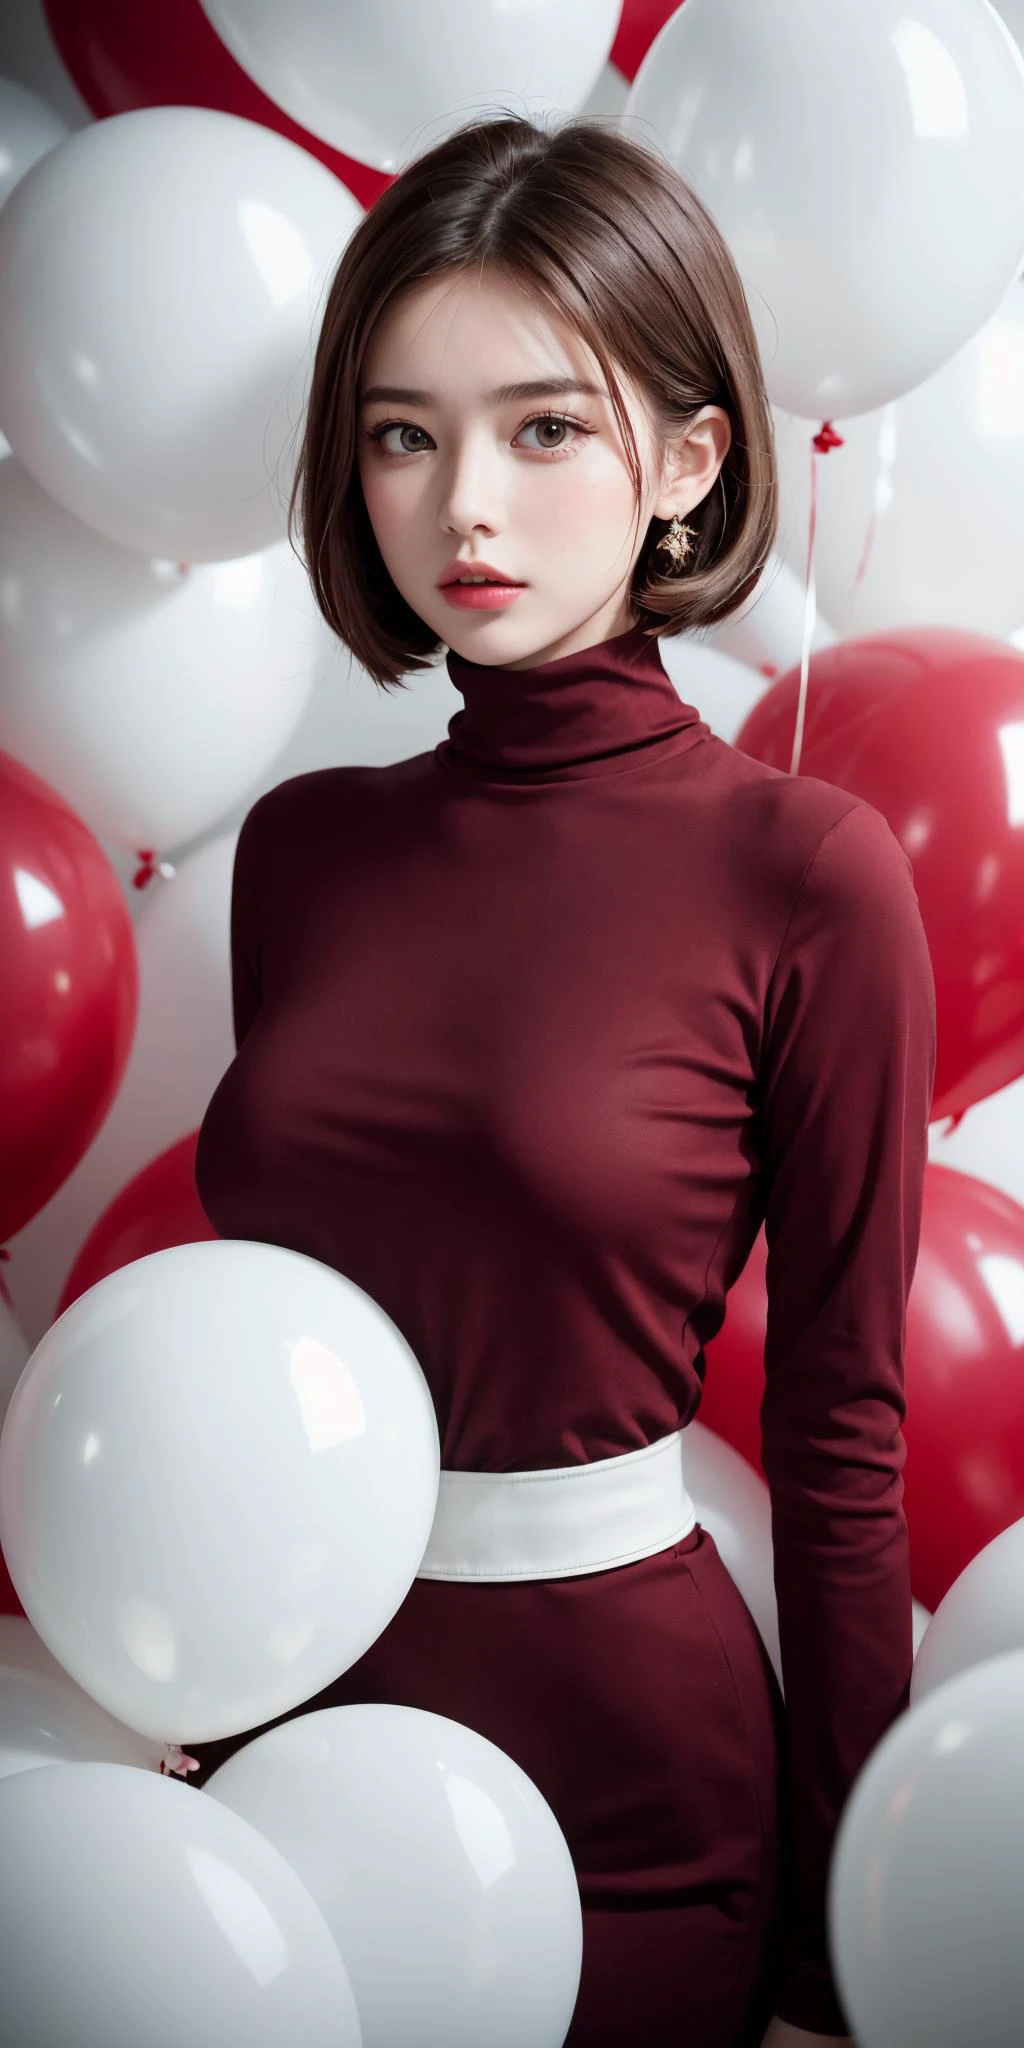 傑作, 最好的品質, 非常細緻的背景, perfect lighting最好的品質,60 年代美麗的年輕女子穿著紅色高領毛衣站在大量白色氣球中間的時尚肖像照片, 使用哈蘇中片幅相機拍攝